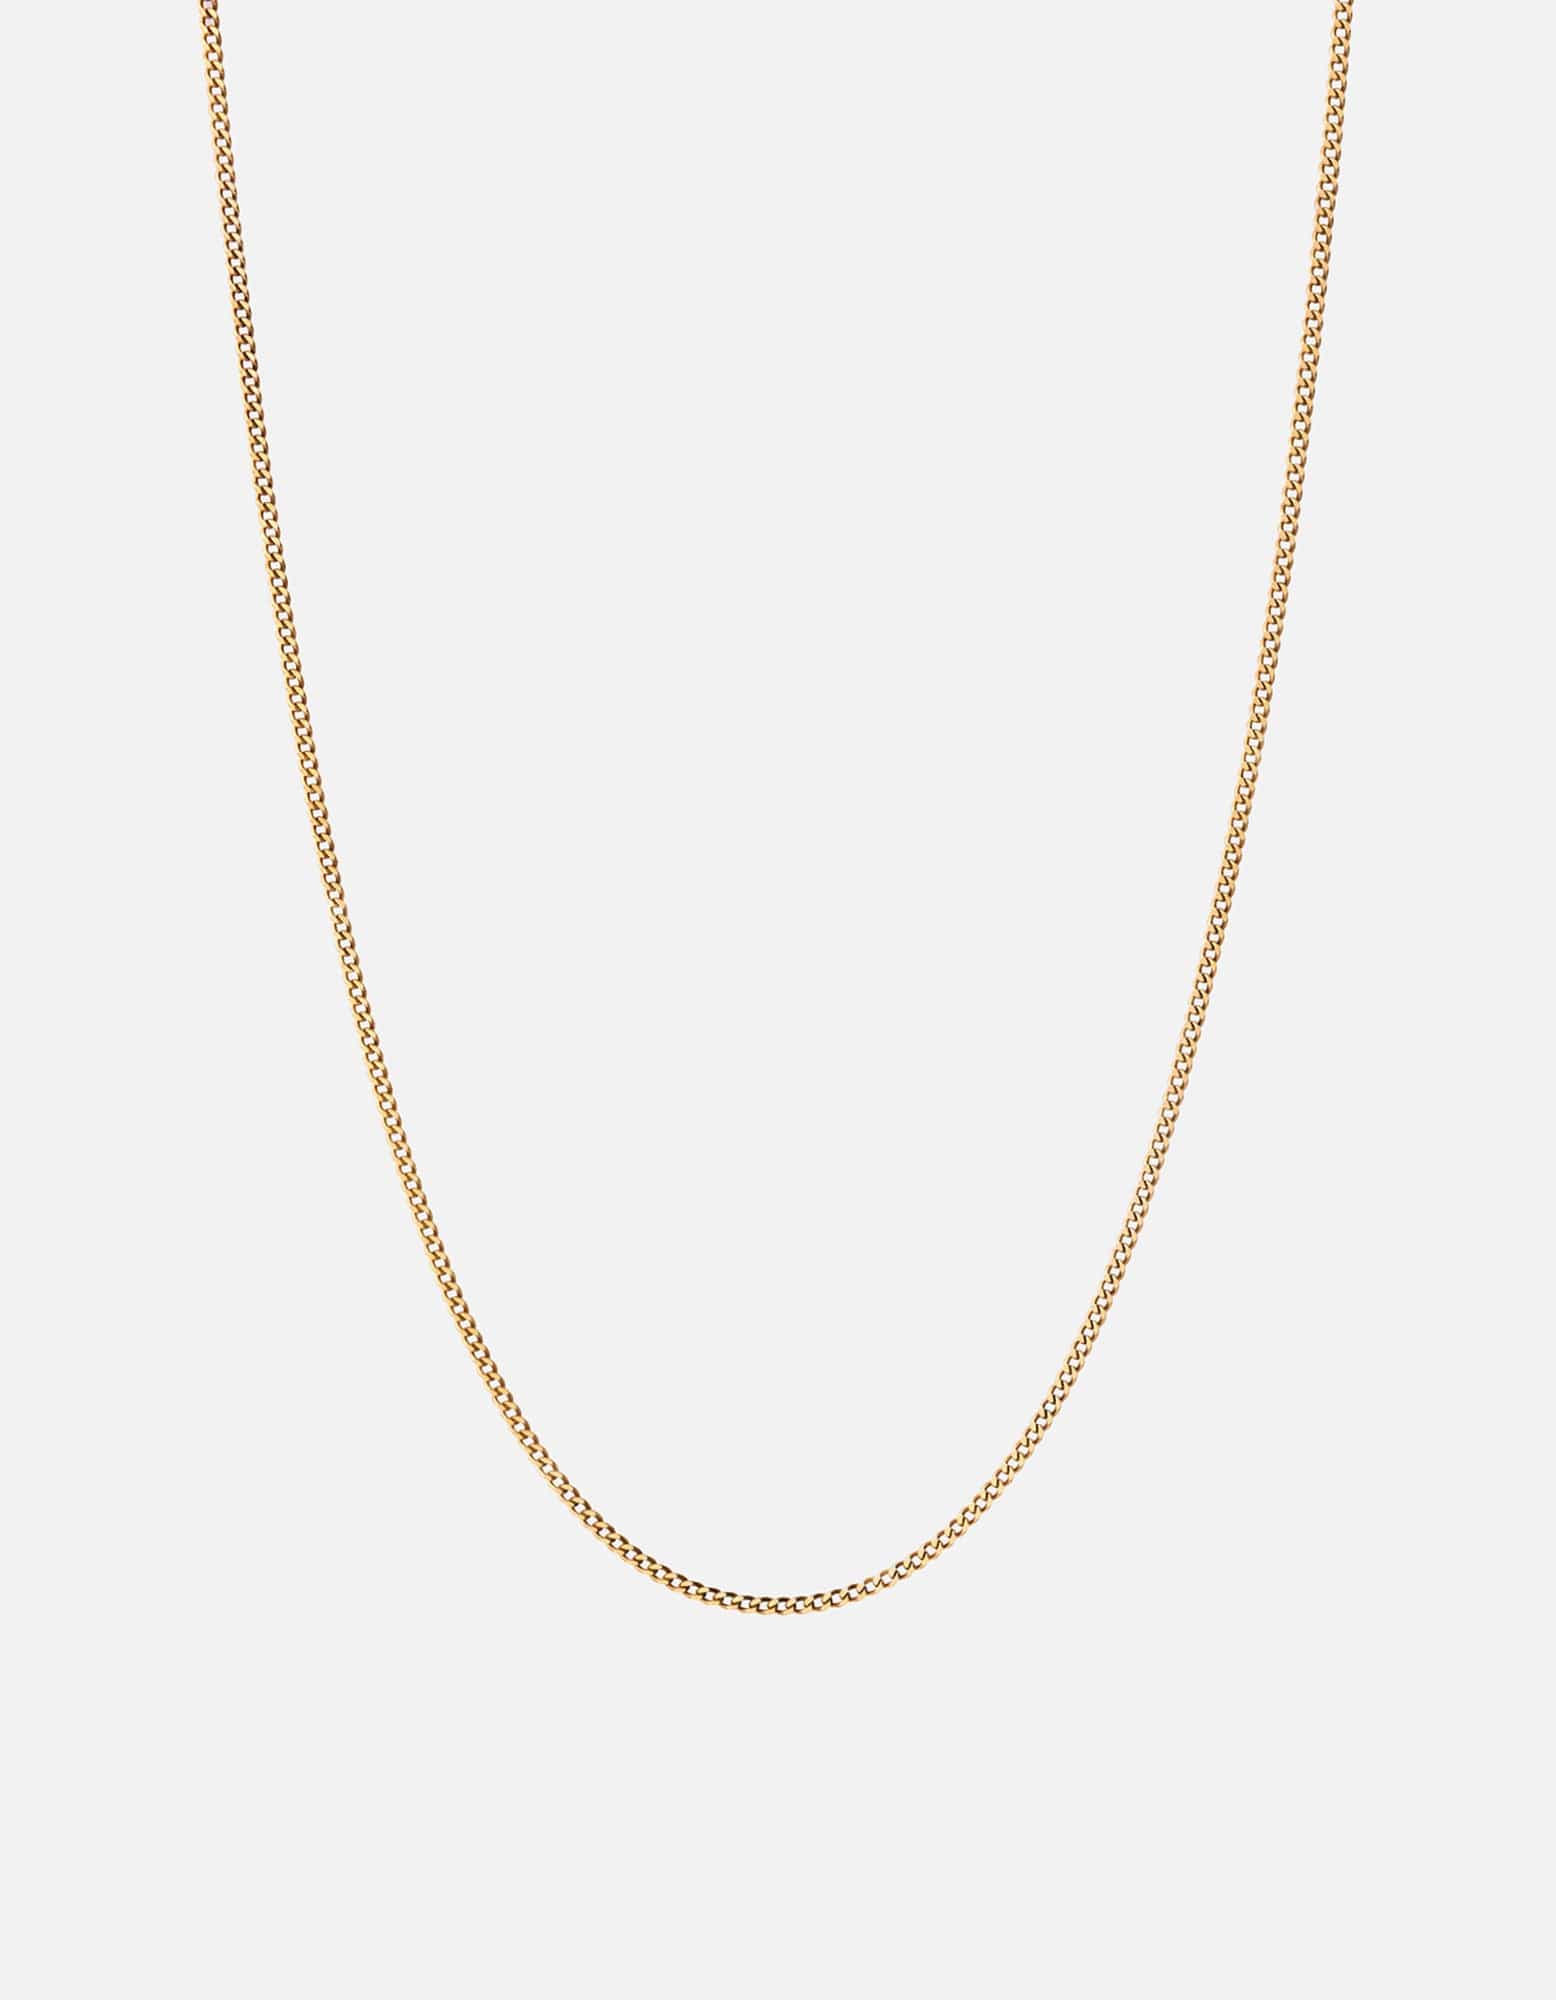 2mm Cuban Chain Necklace, Gold | Men's Necklaces | Miansai